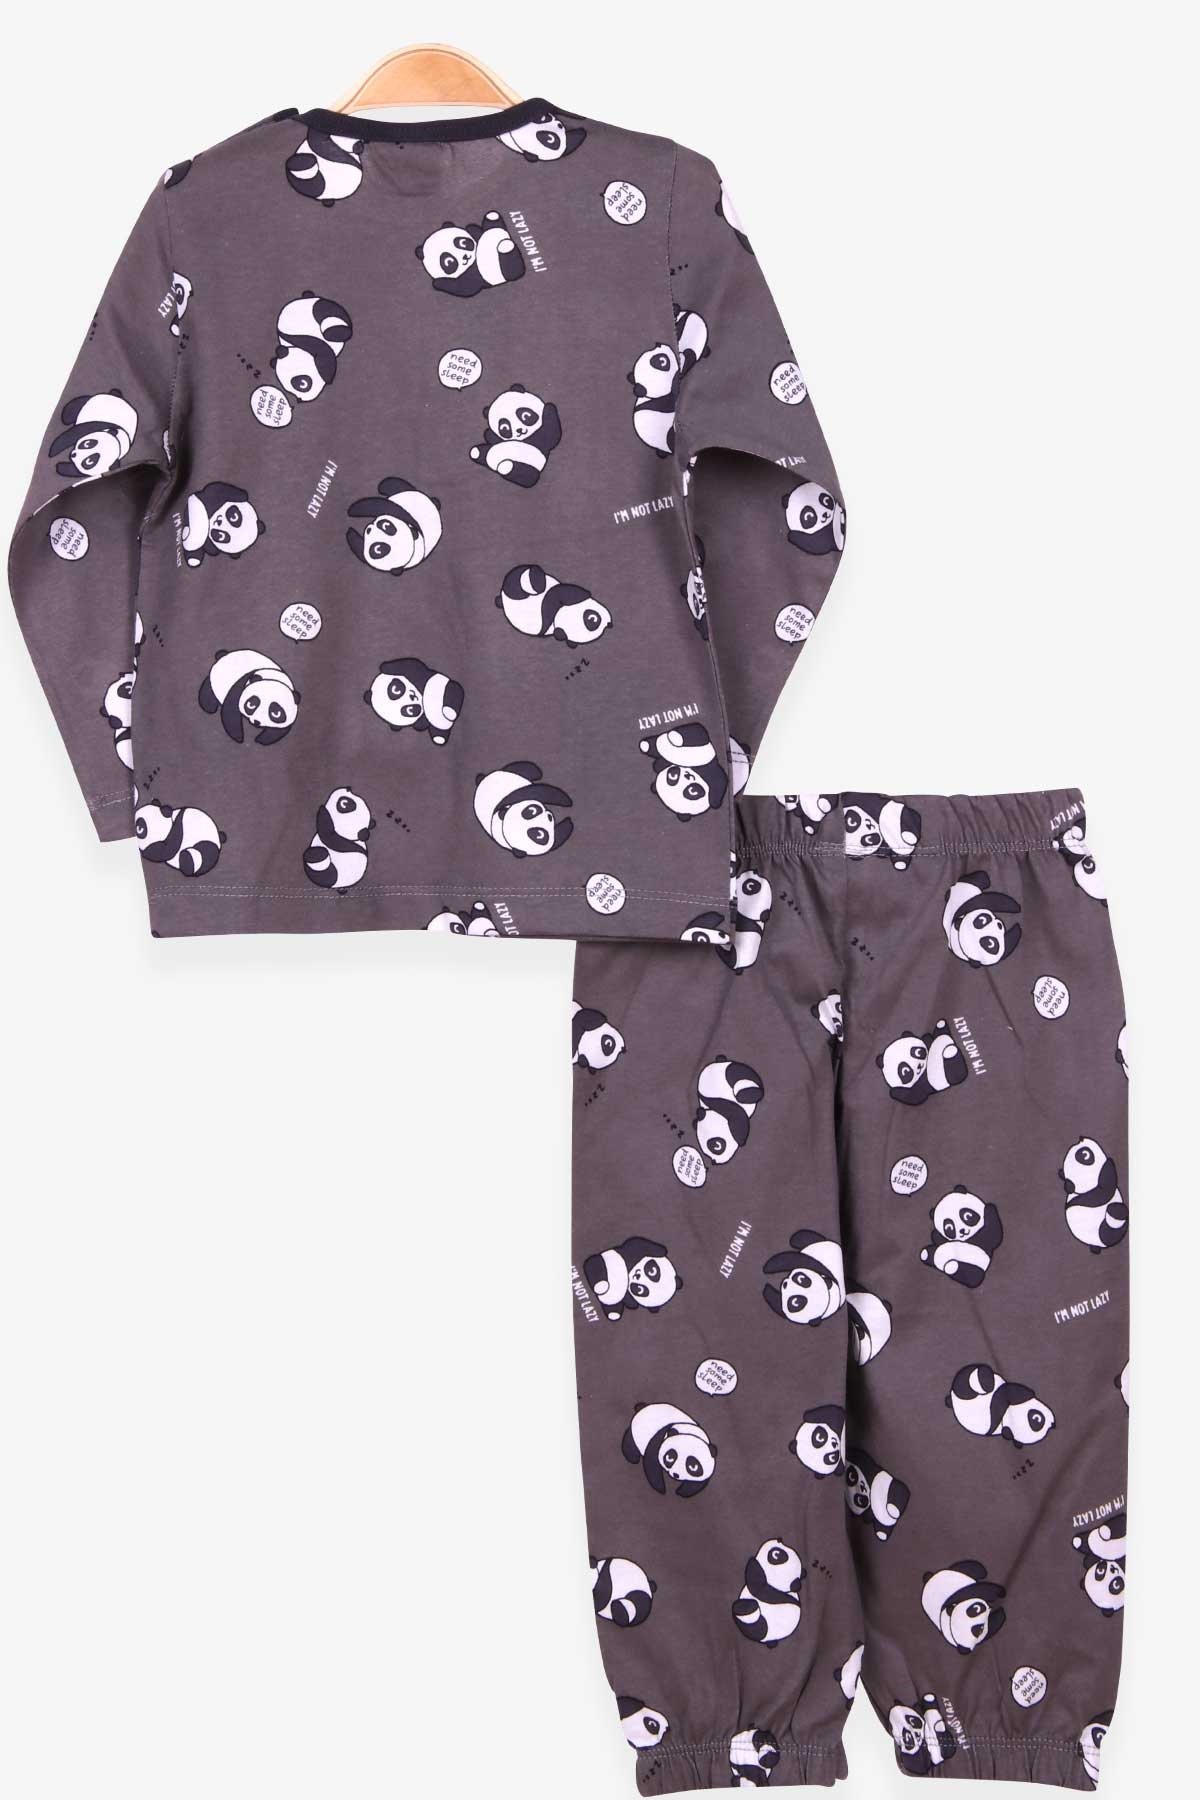 Erkek Bebek Pijama Takımı Panda Desenli Füme 9 Ay - Yumuşak Kumaş | Breeze